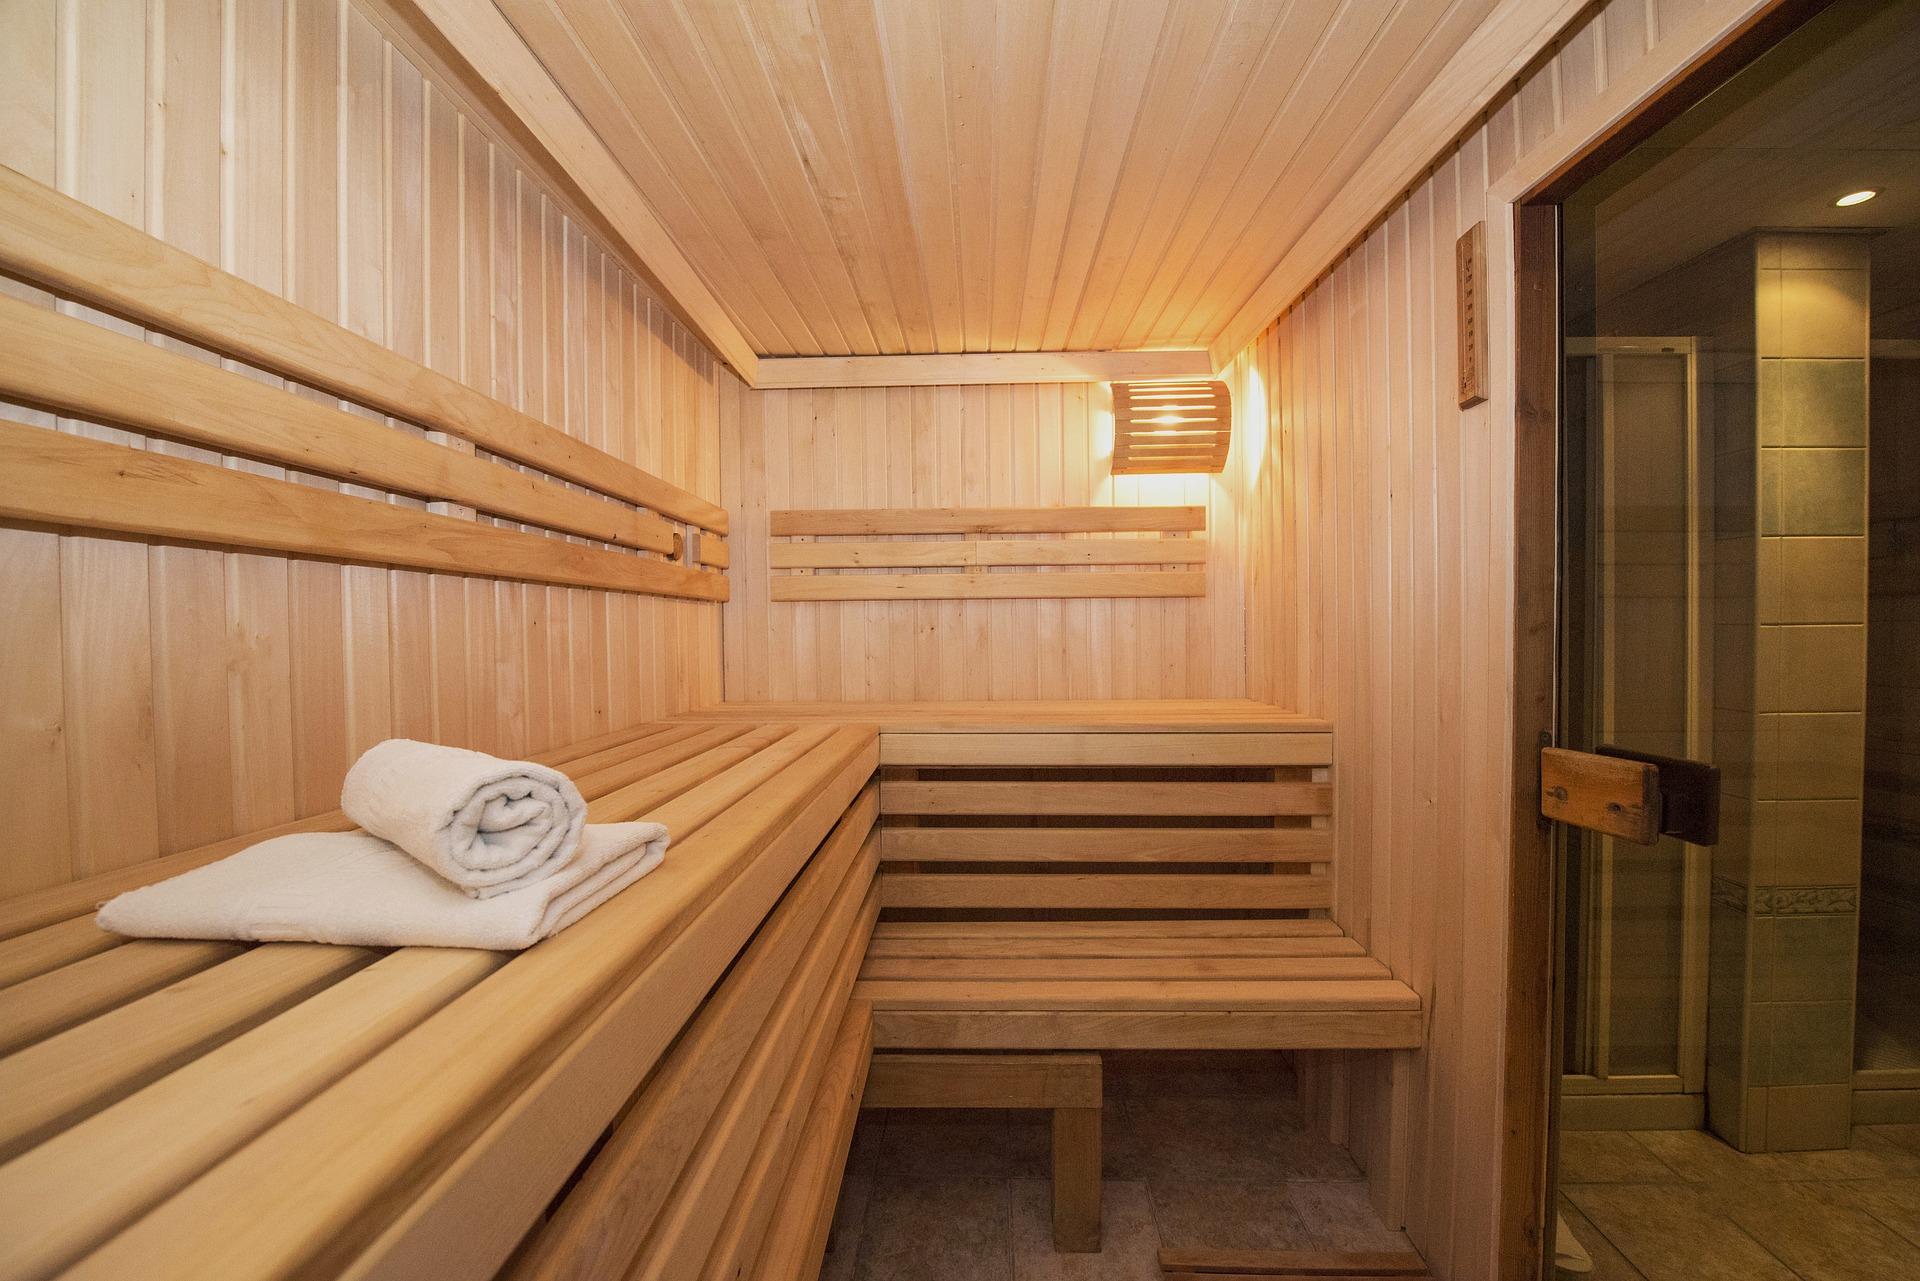 ten tweede toezicht houden op hand Hoe kun je goedkoop naar de sauna? | DIK.NL